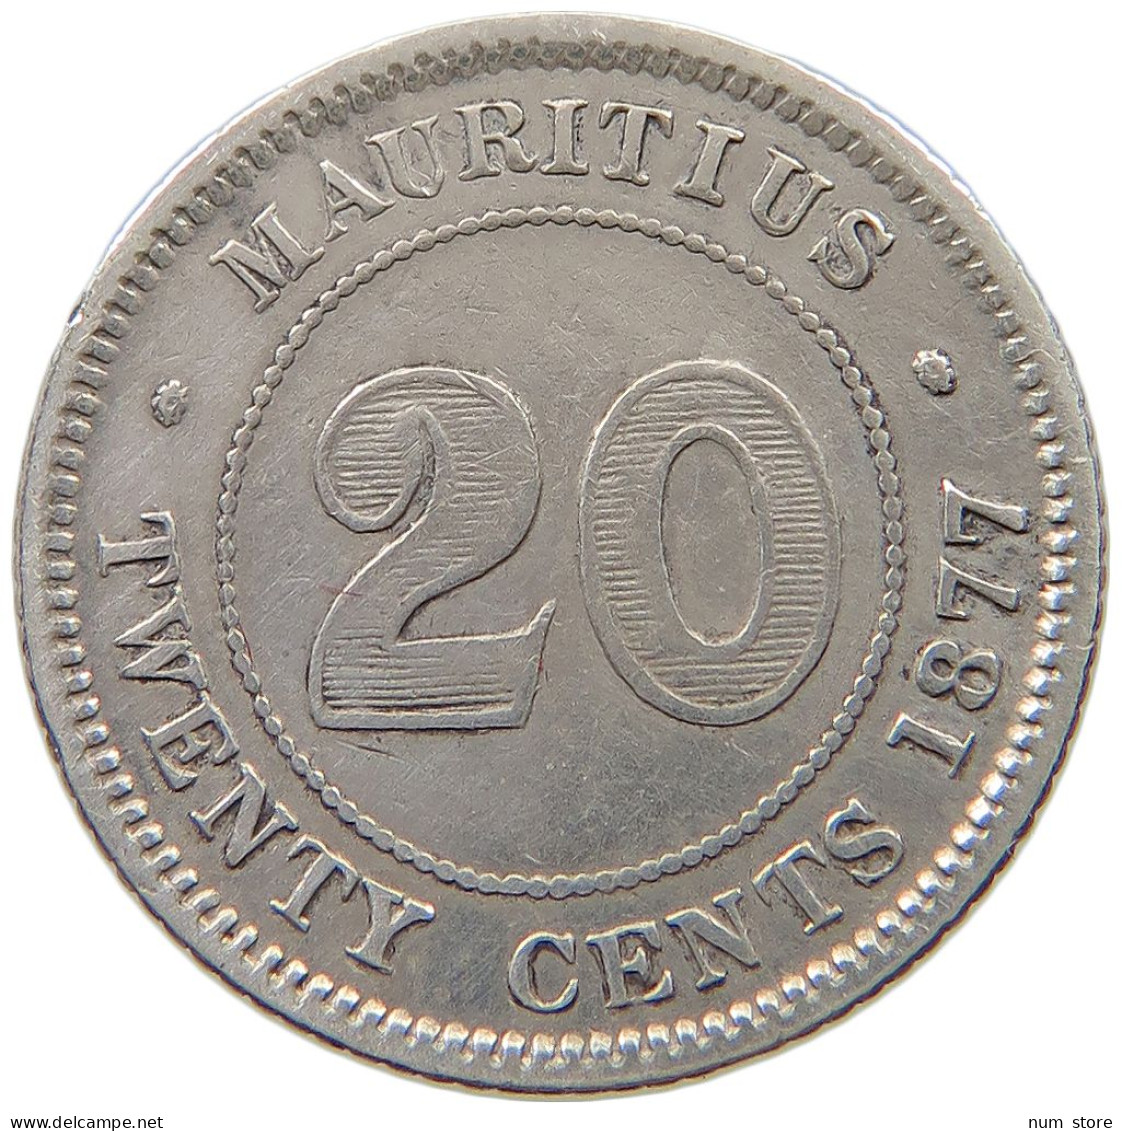 MAURITIUS 20 CENTS 1877 H Victoria 1837-1901 #t108 0117 - Mauritius